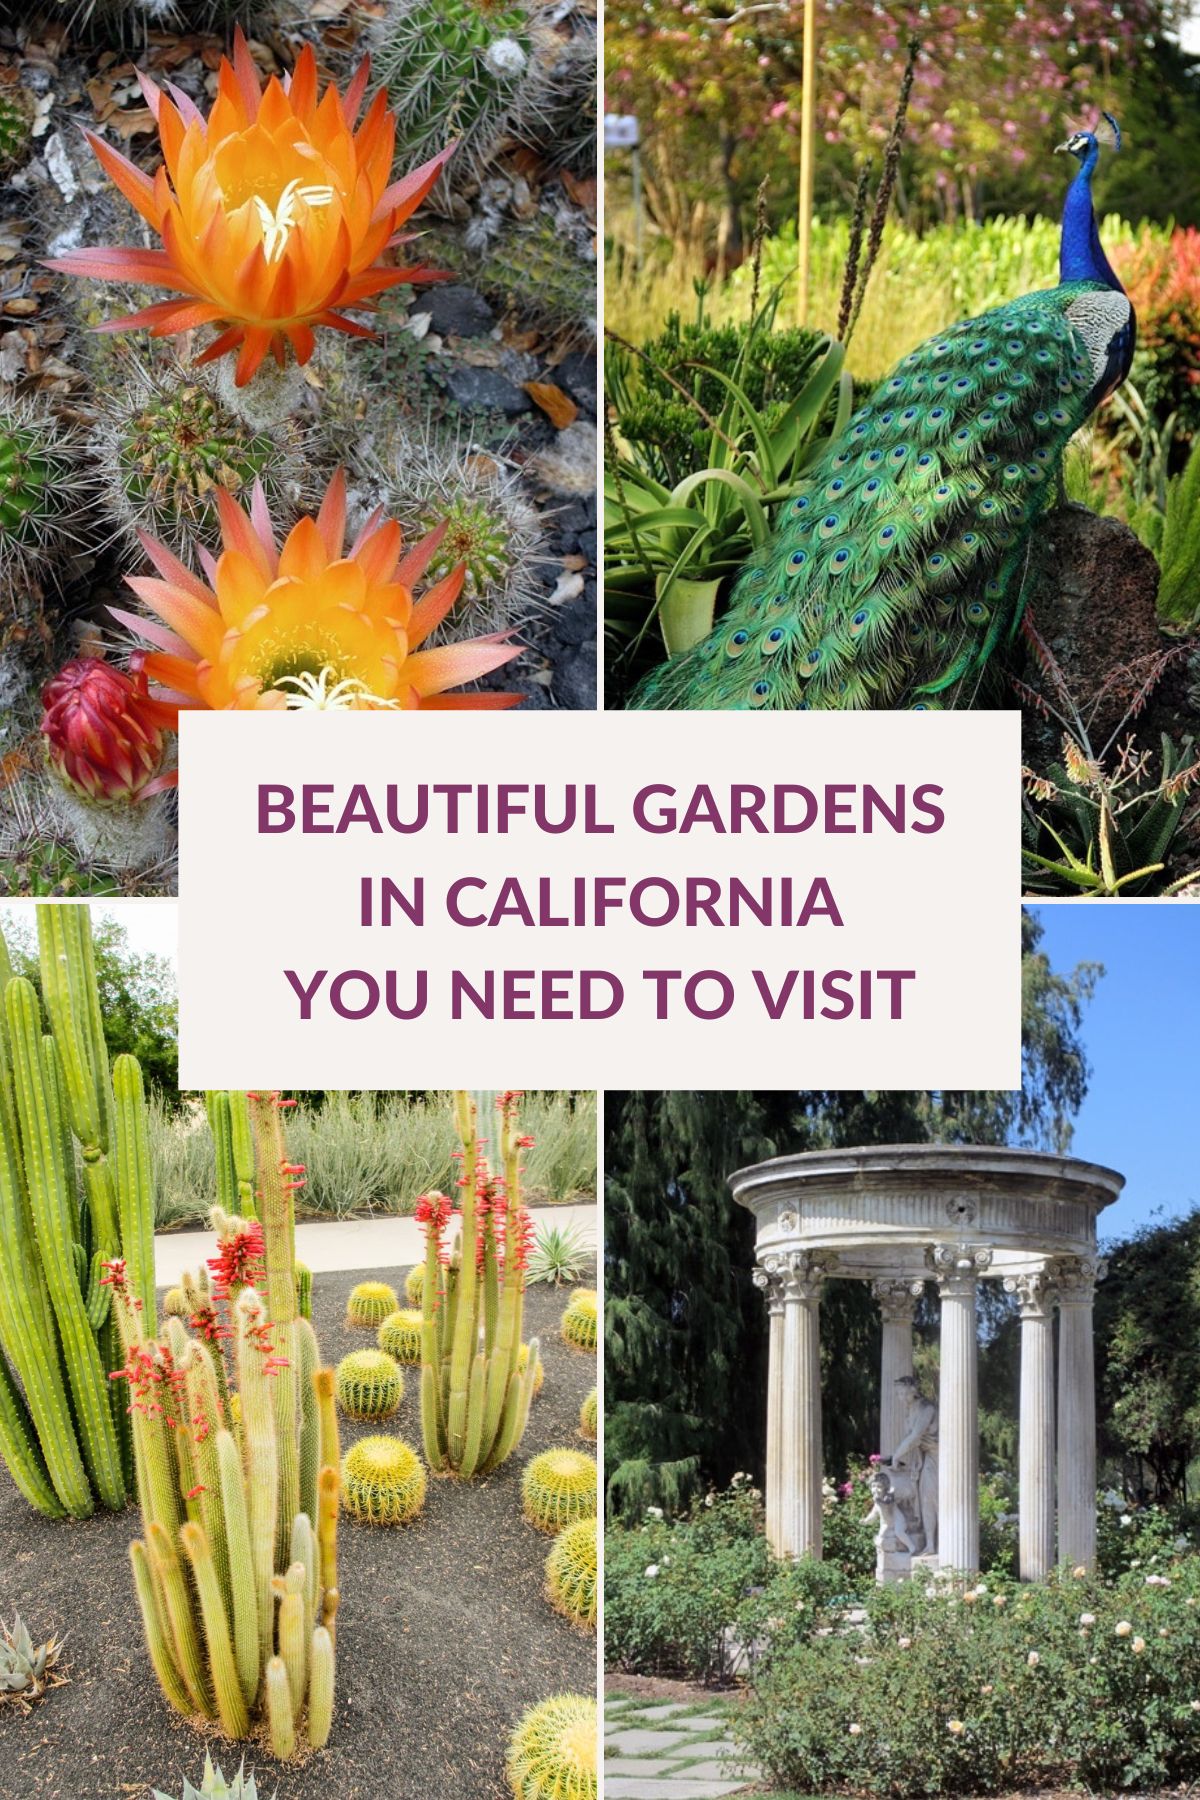  22 bellissimi giardini in California che amerete